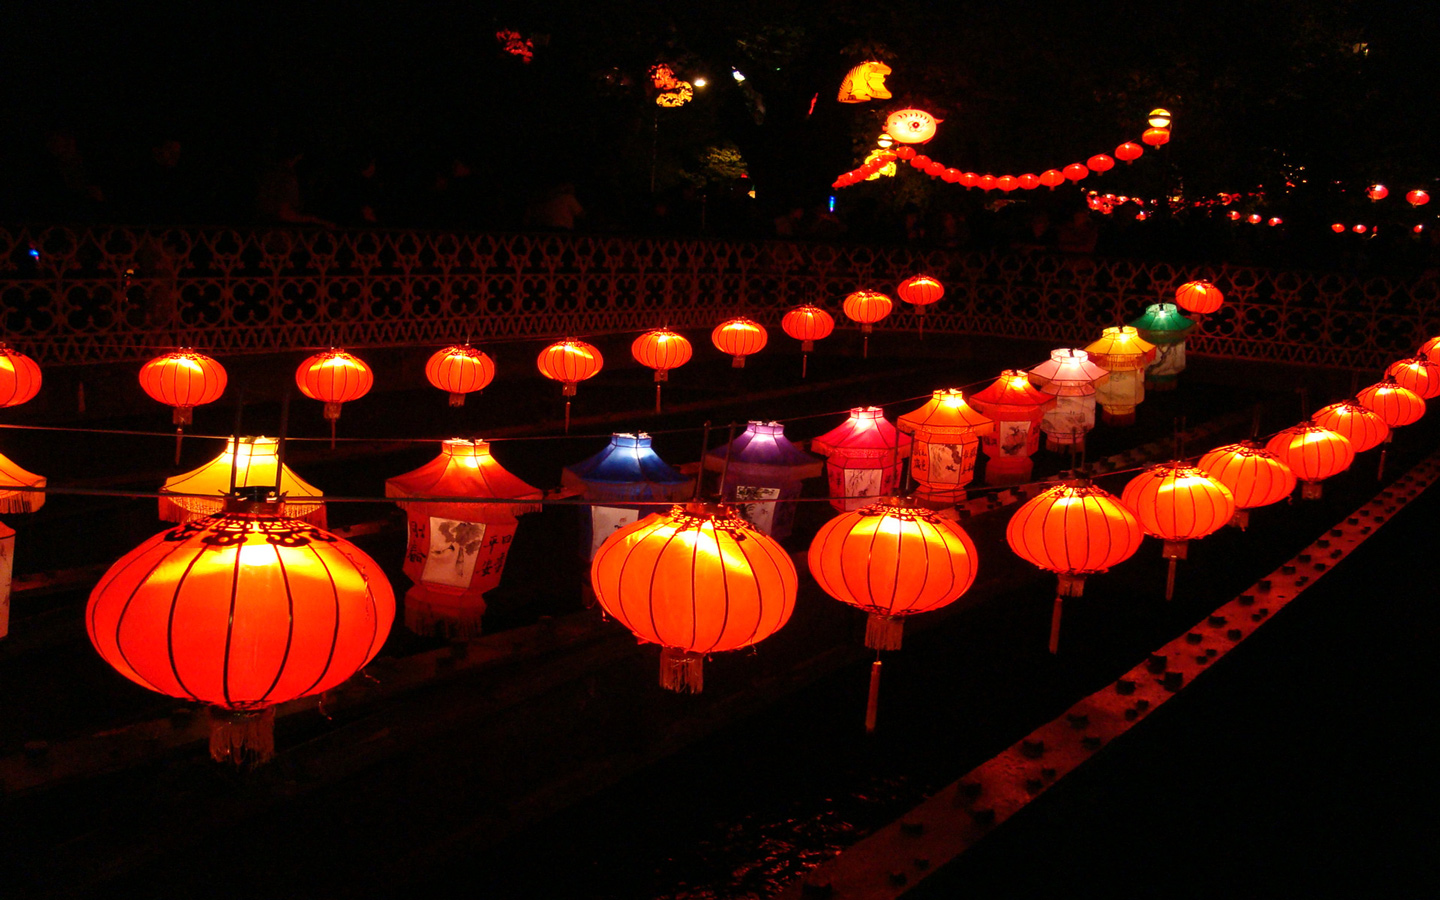 chinesische laternentapete,laterne,beleuchtung,licht,orange,nacht